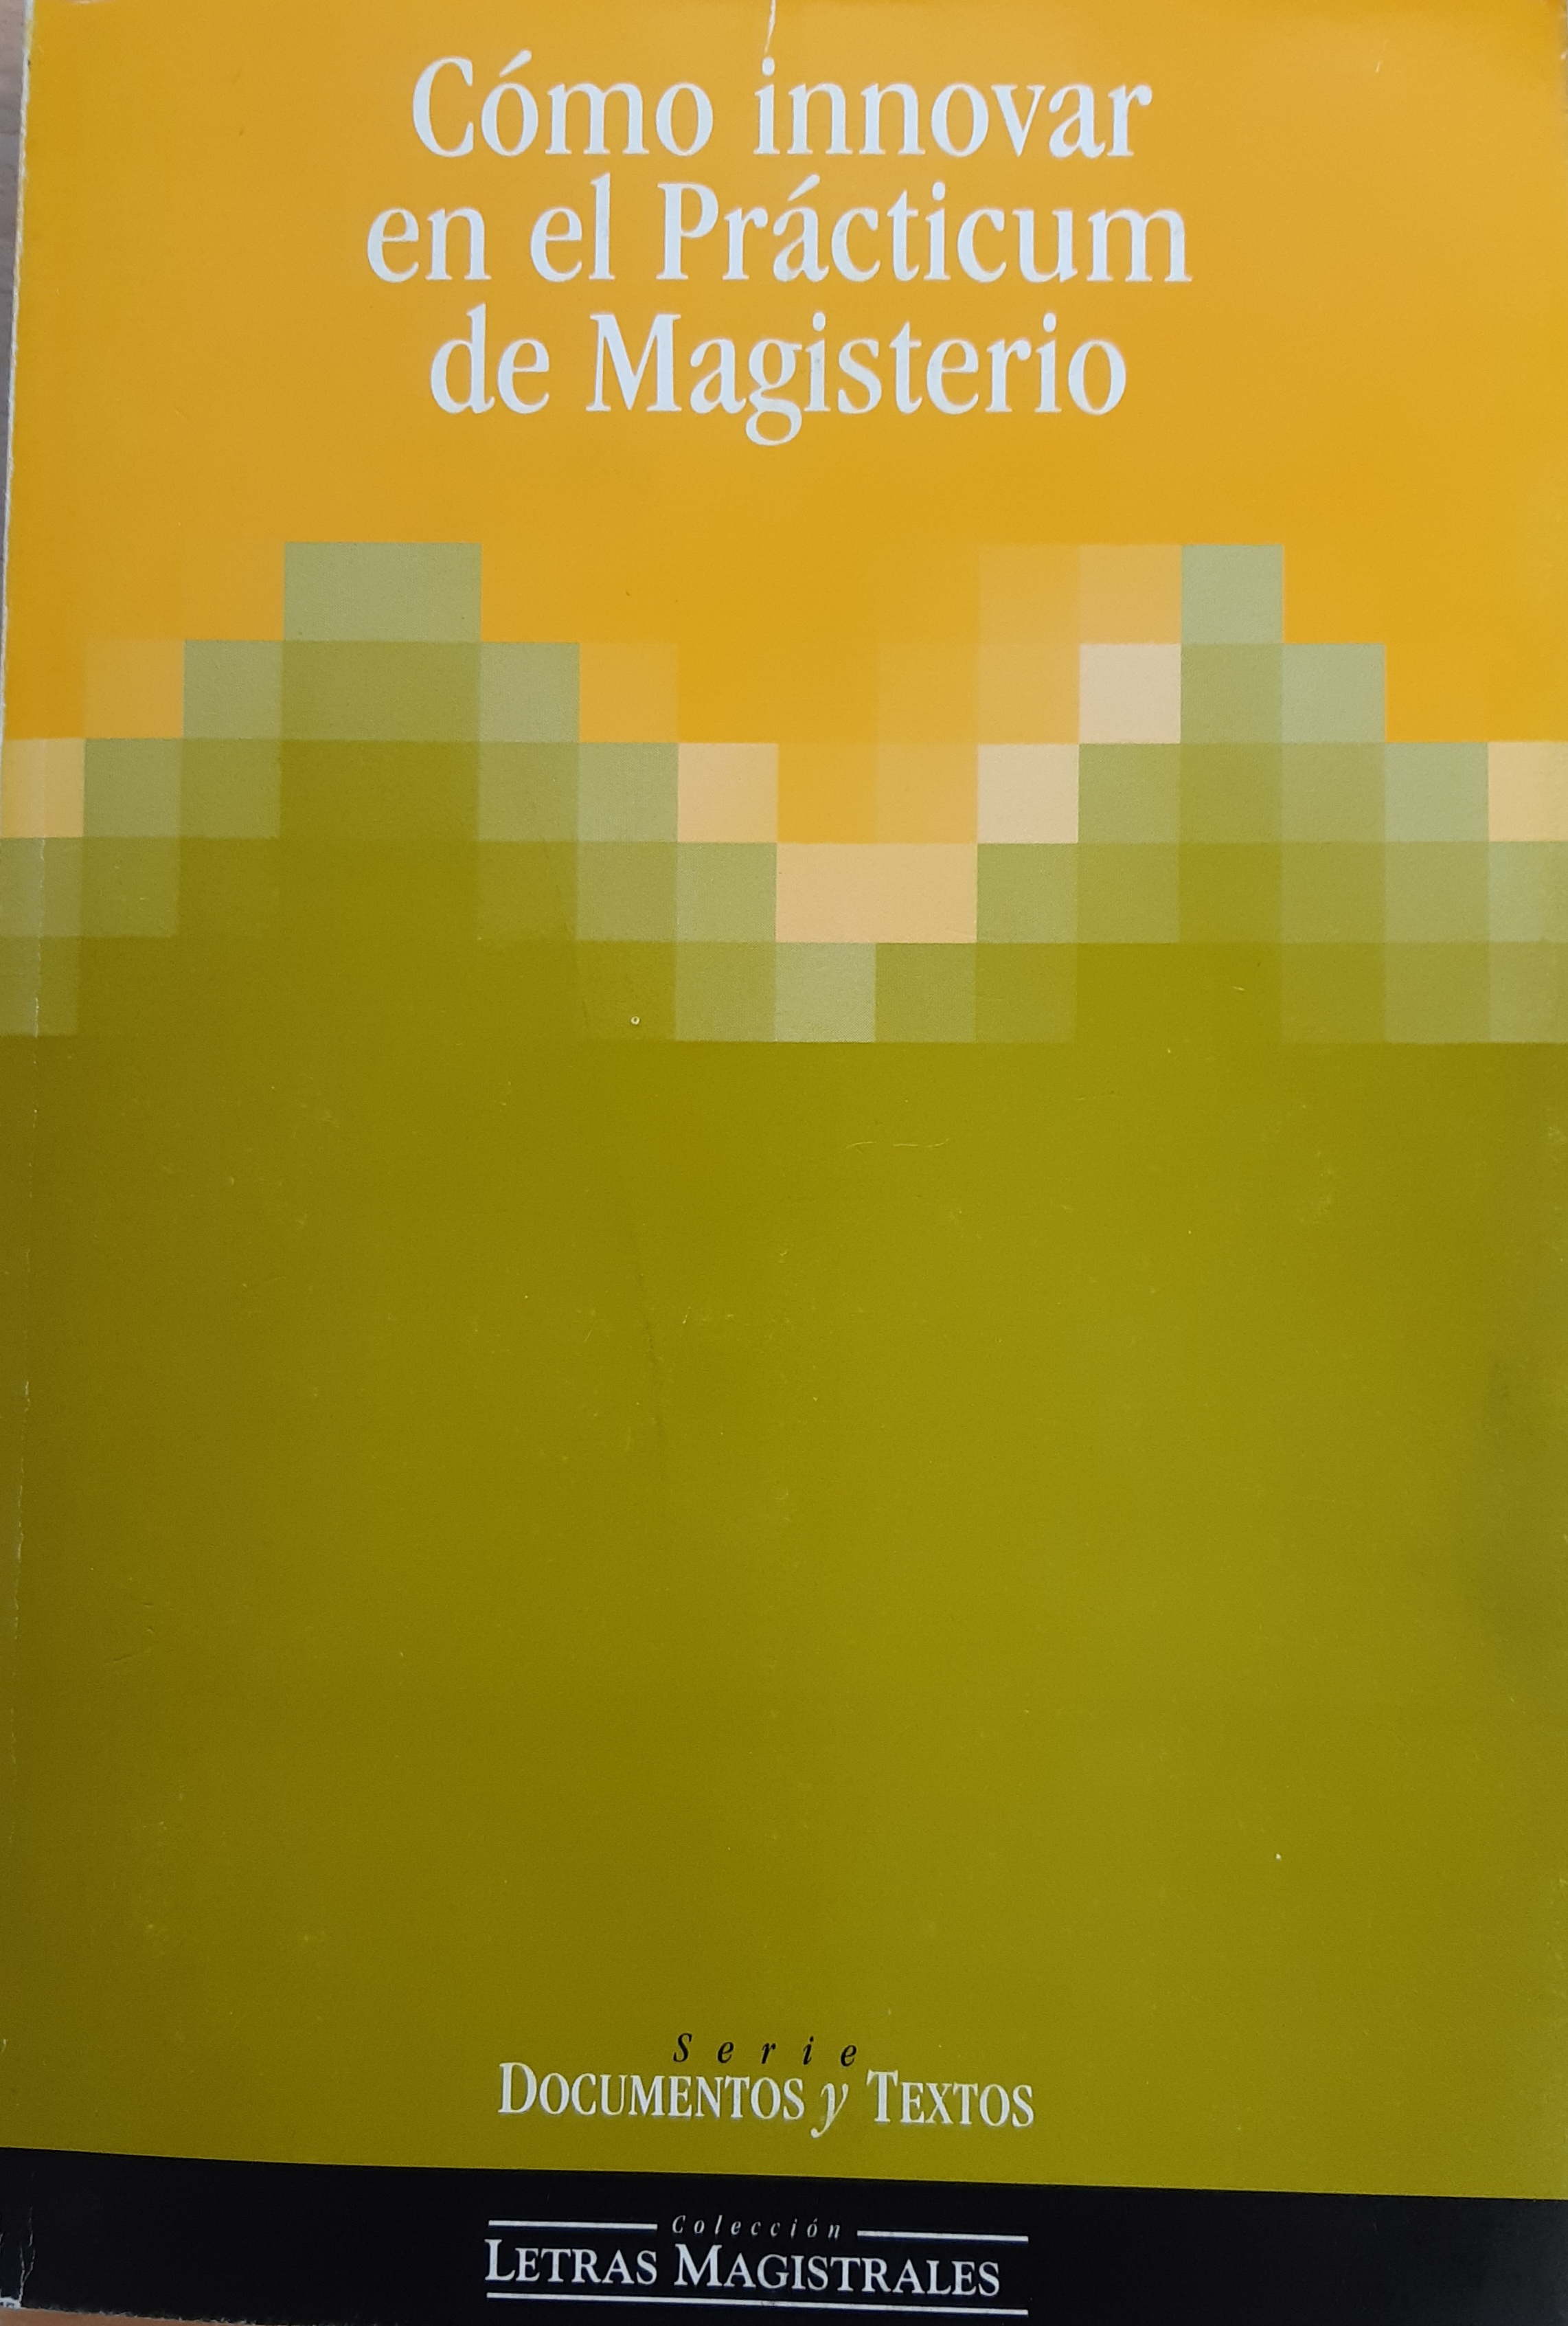 Imagen de portada del libro Cómo innovar en el Prácticum de Magisterio